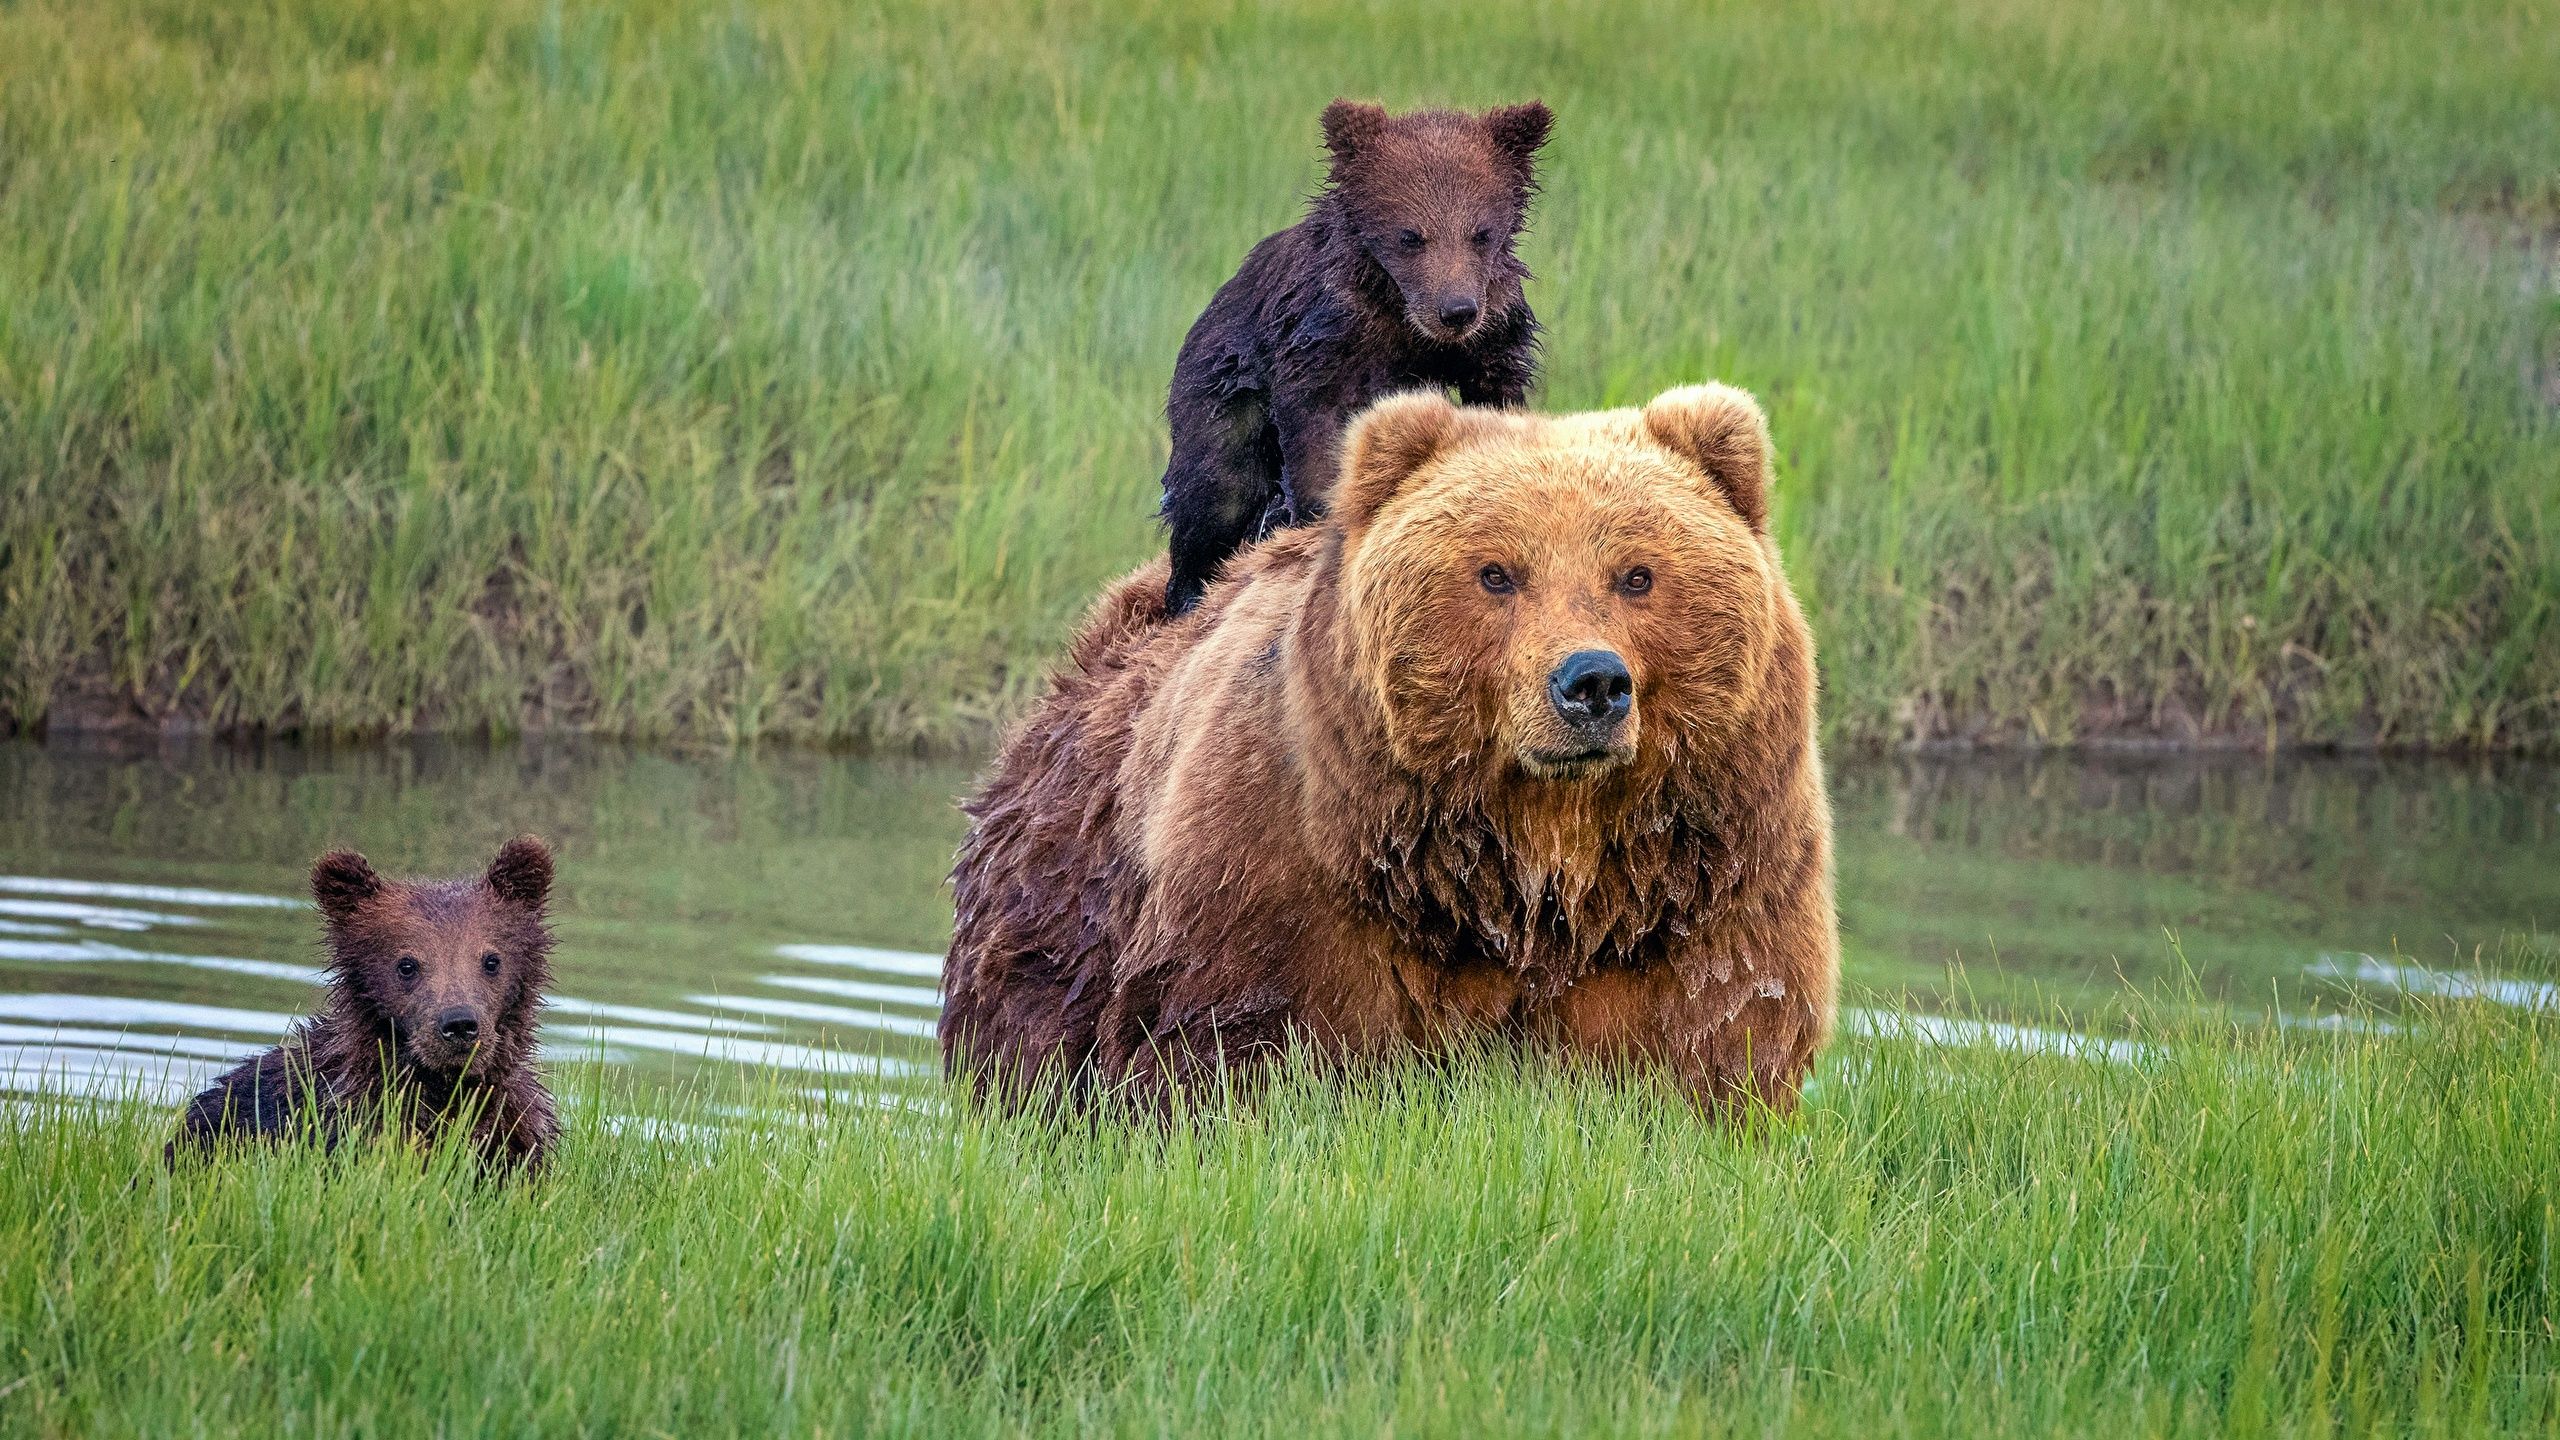 Desktop Wallpaper Grizzly Cubs Bears Grass animal 2560x1440